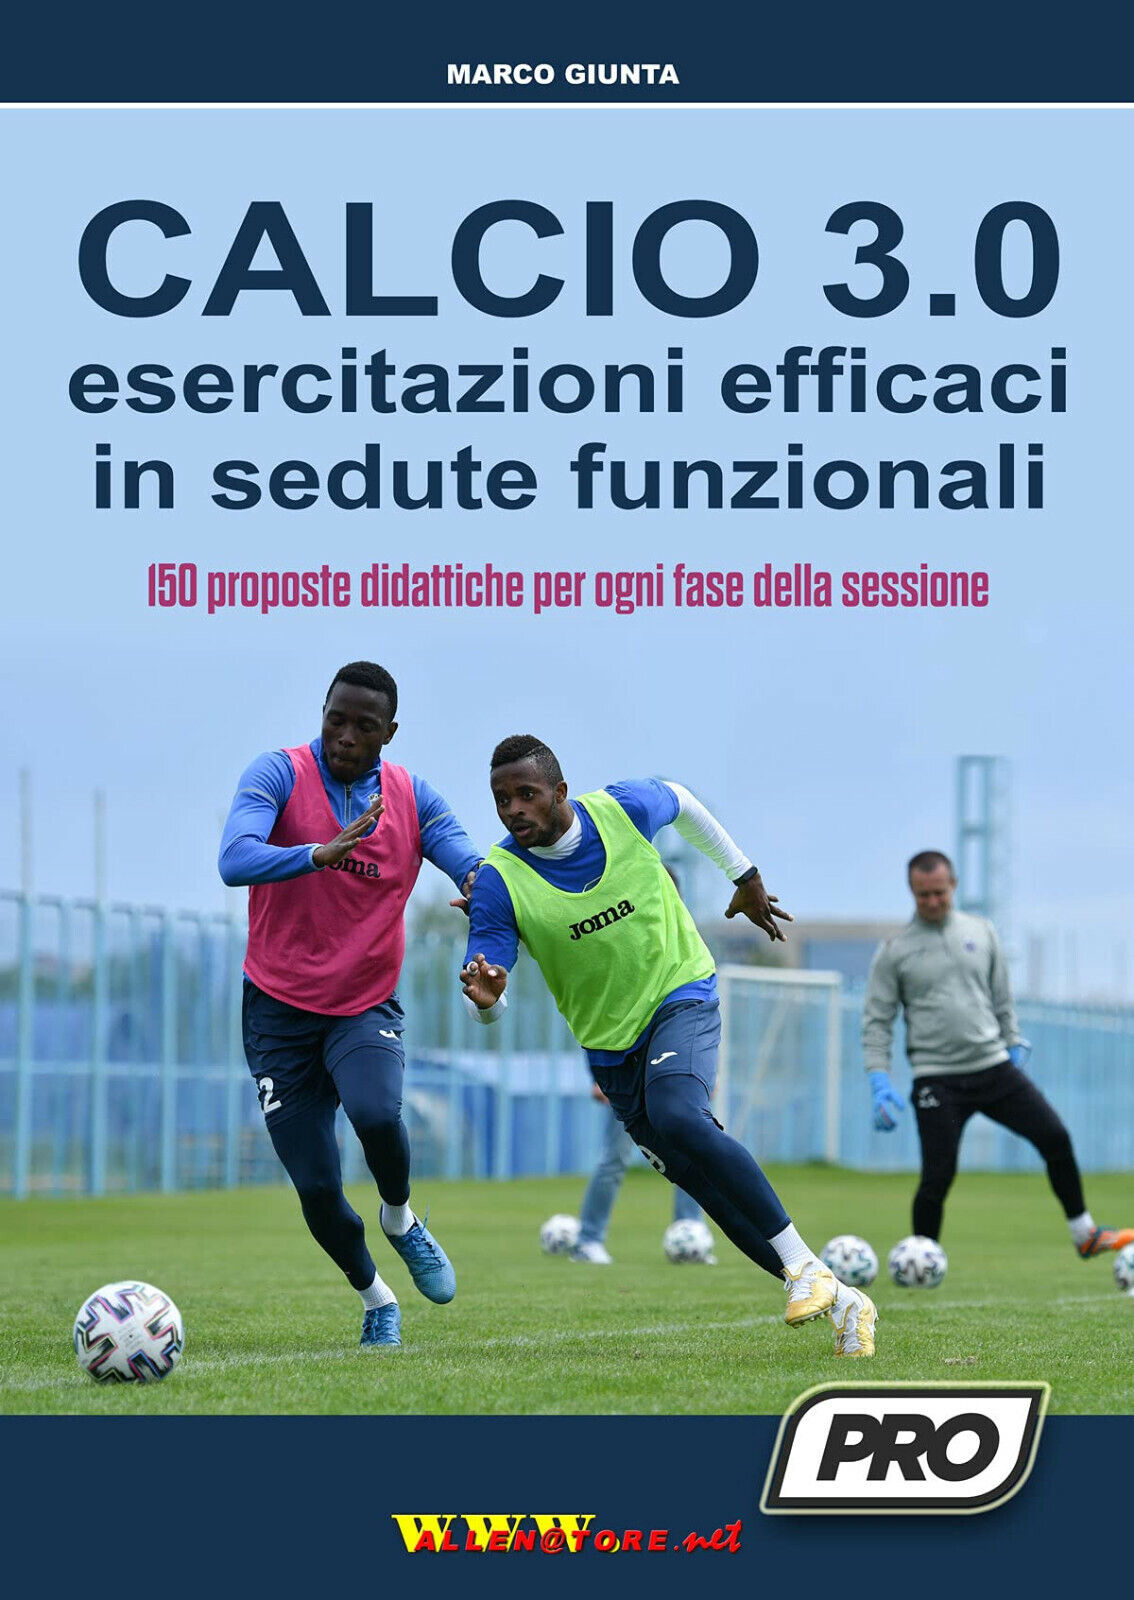 Calcio 3.0: esercitazioni funzionali in sedute efficaci - Marco Giunta - 2021 libro usato